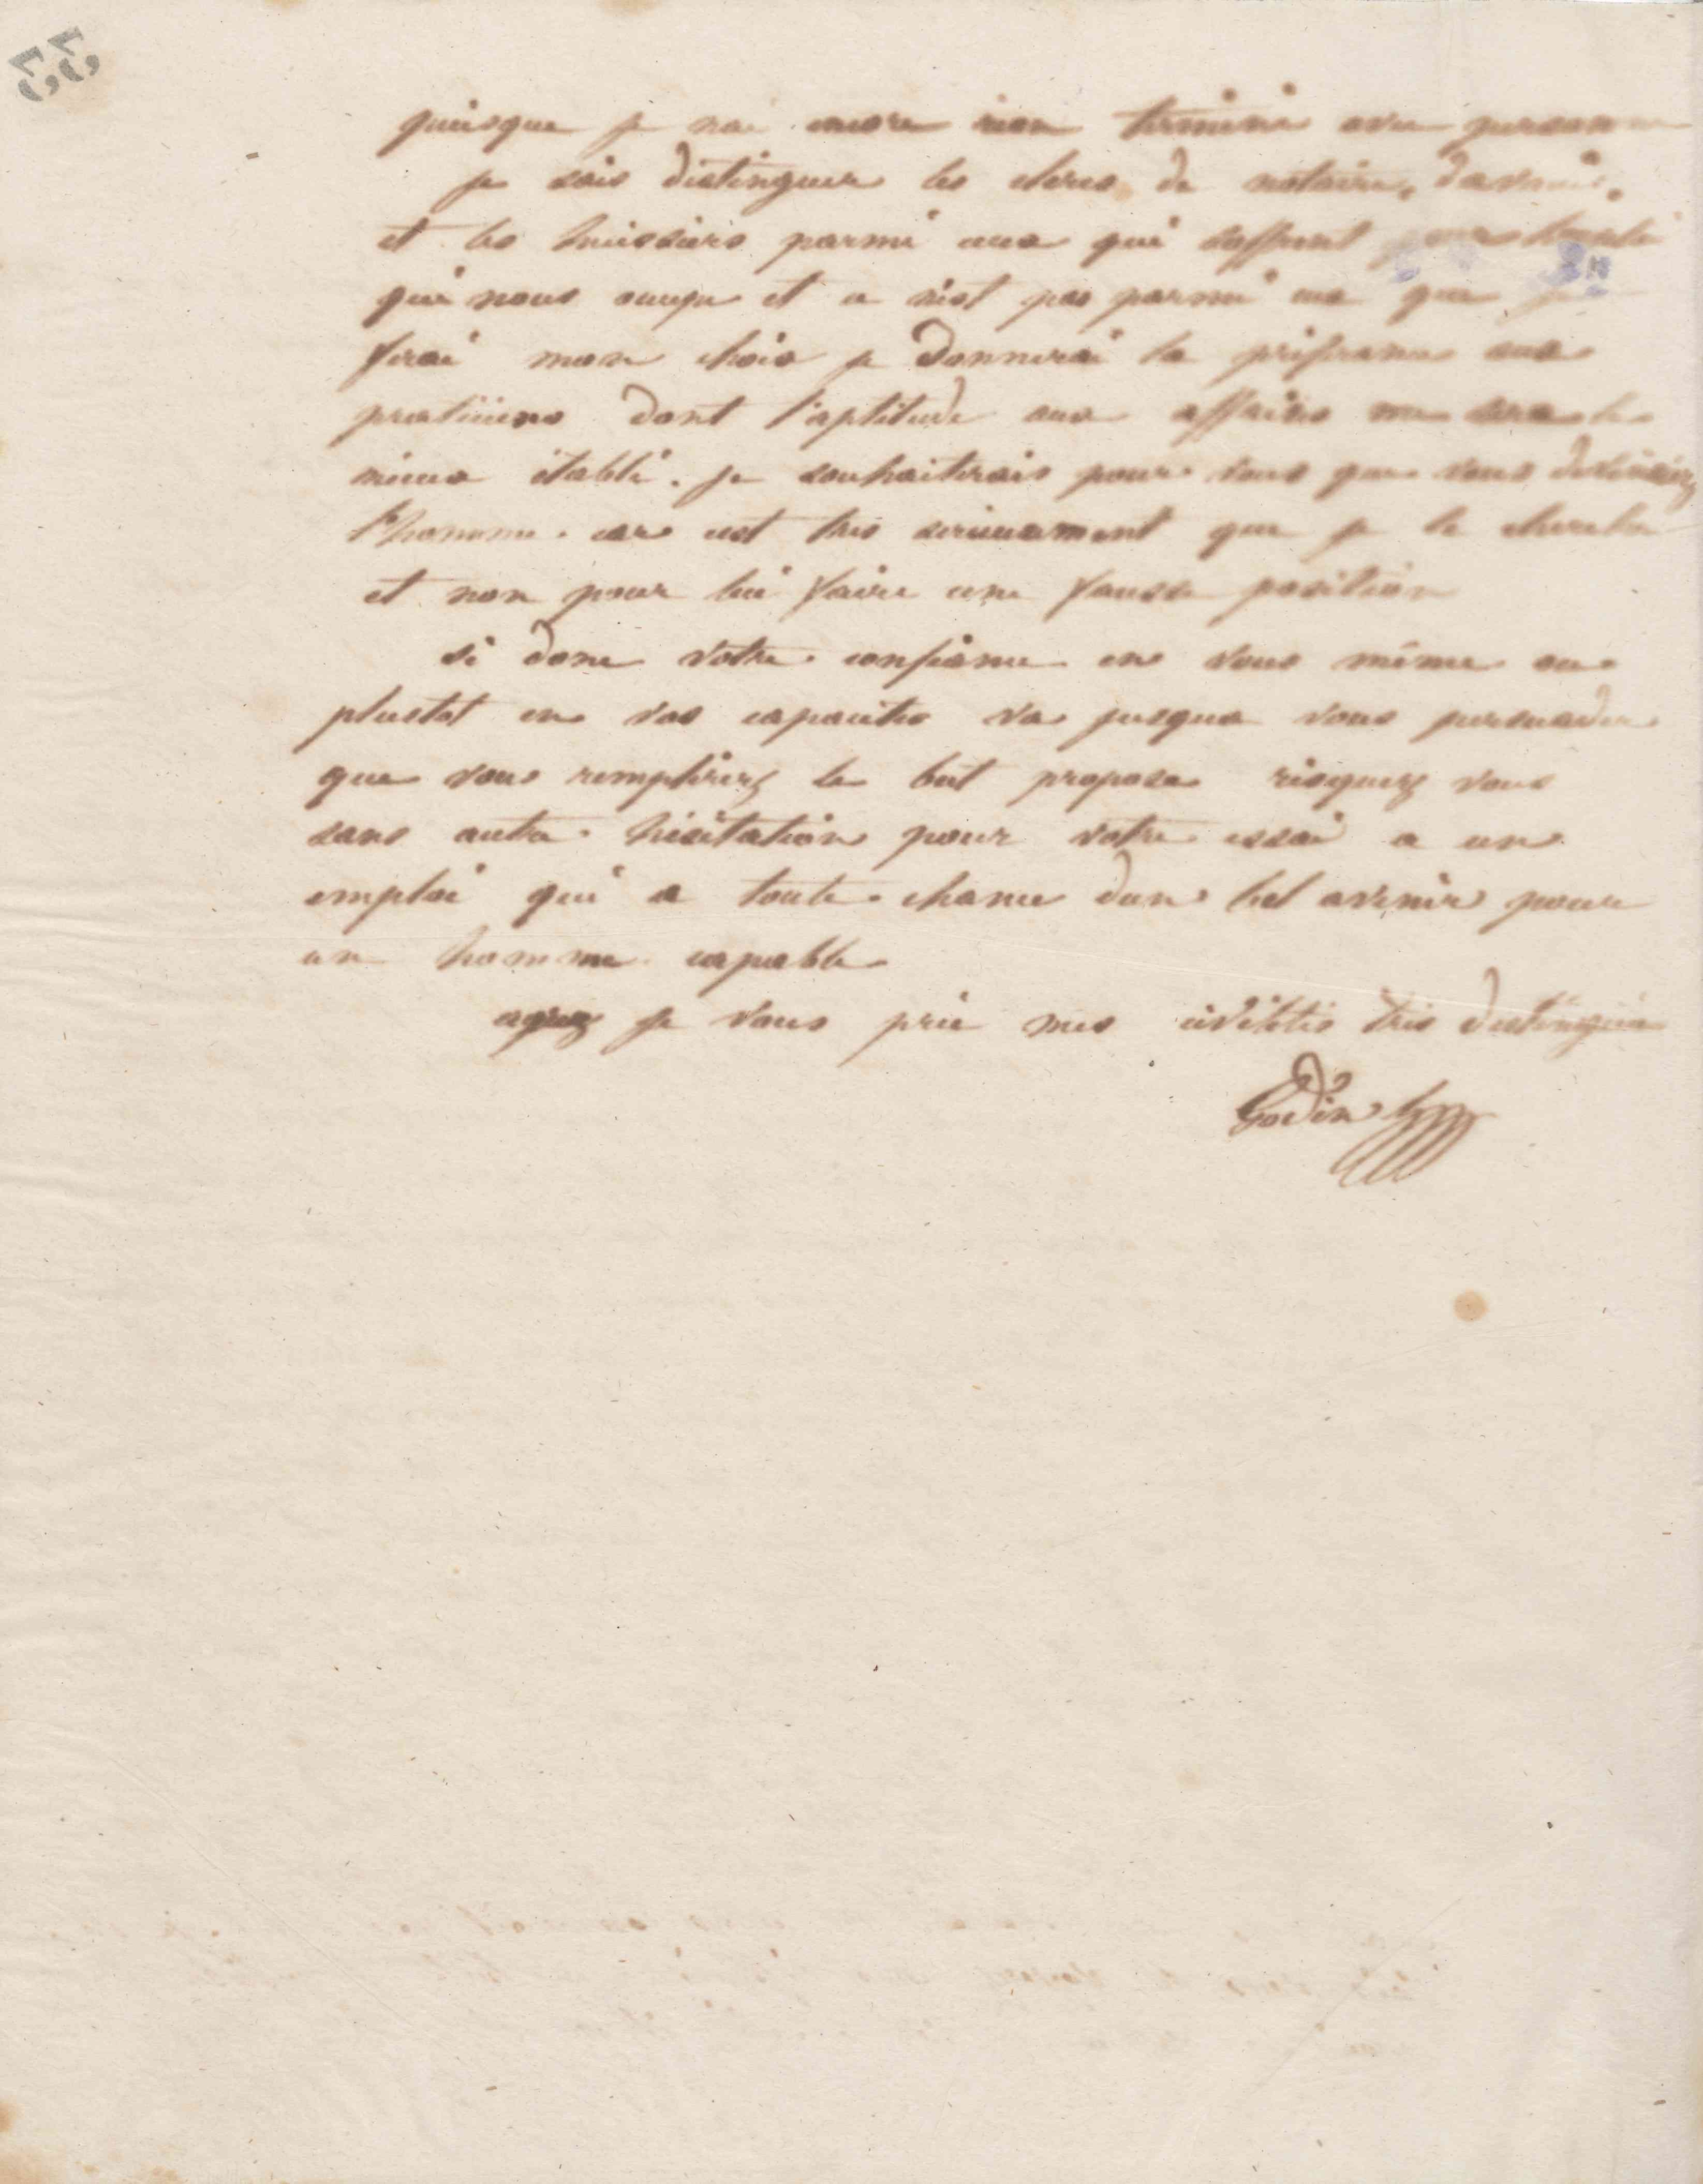 Jean-Baptiste André Godin à monsieur Dolot, 7 juin 1856